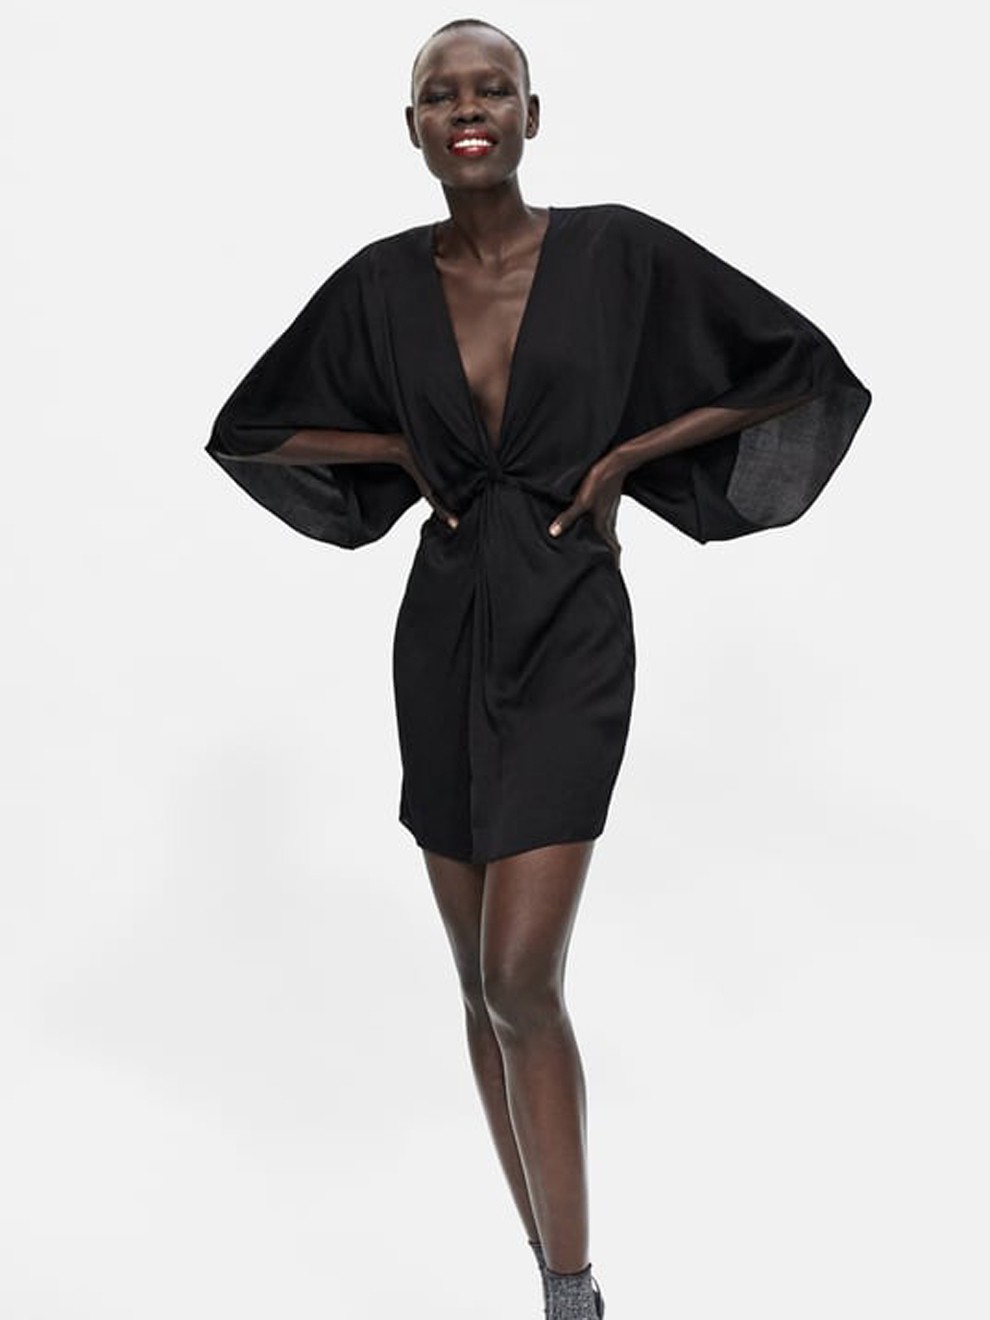 Lógico Virgen mental Para las más sexys: vestido negro corto de Zara